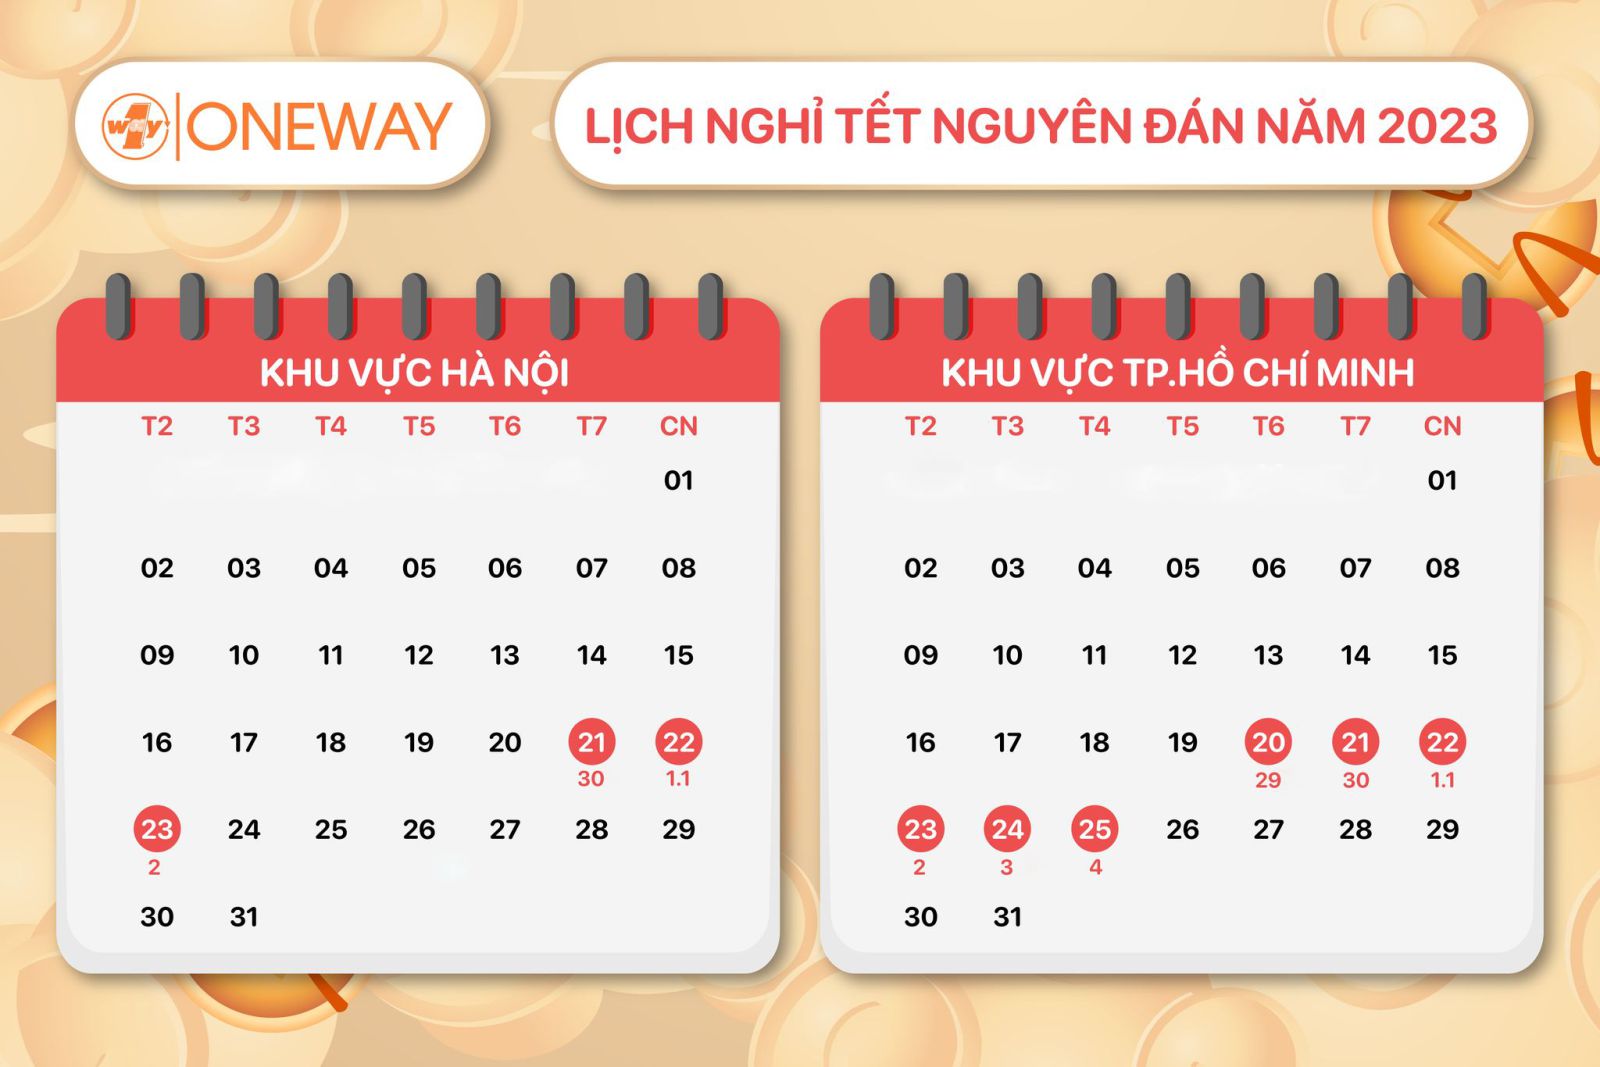 OneWay thông báo lịch nghỉ Tết nguyên đán 2023